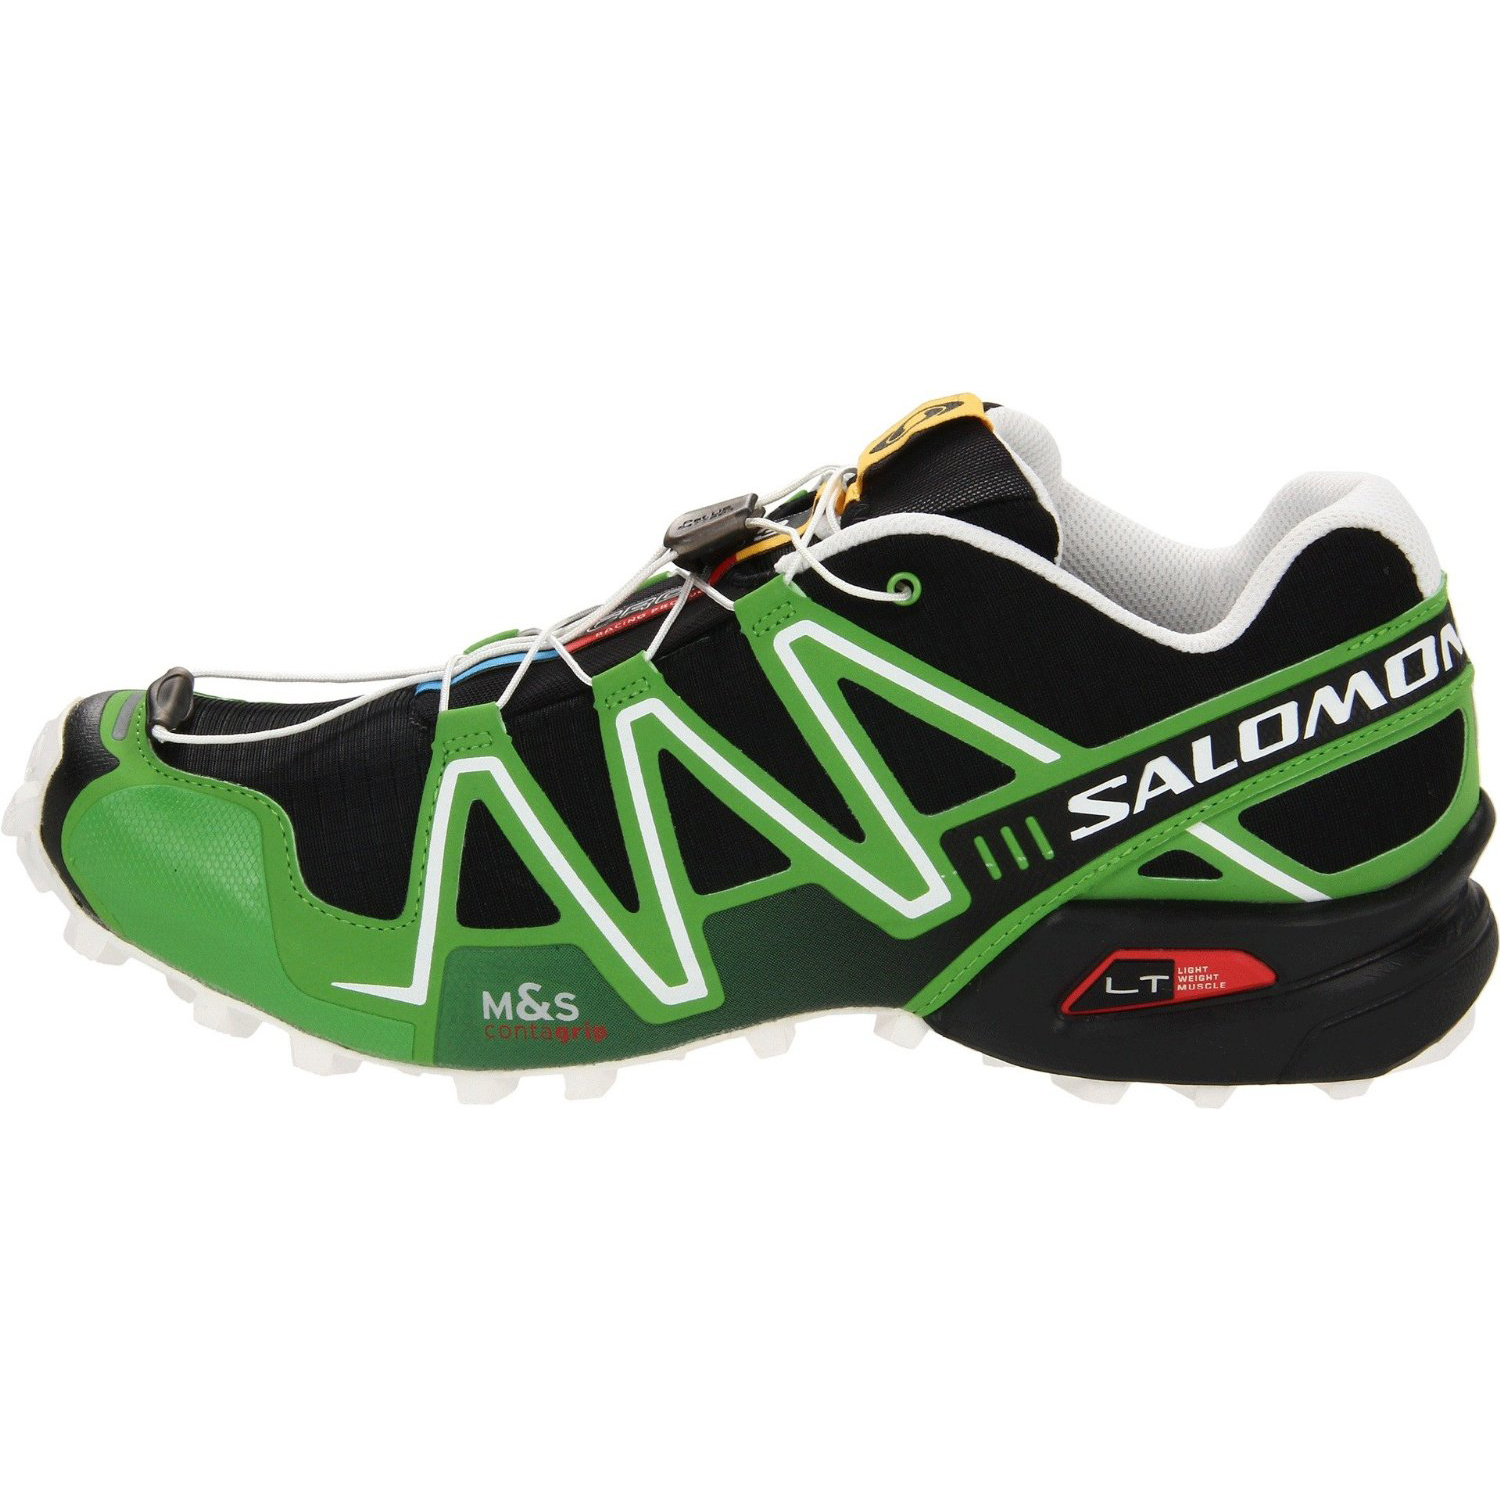 Salomon Men's Speedcross 3 Trail Running Shoe (Black/Light Green-X/Cane)  $95.56